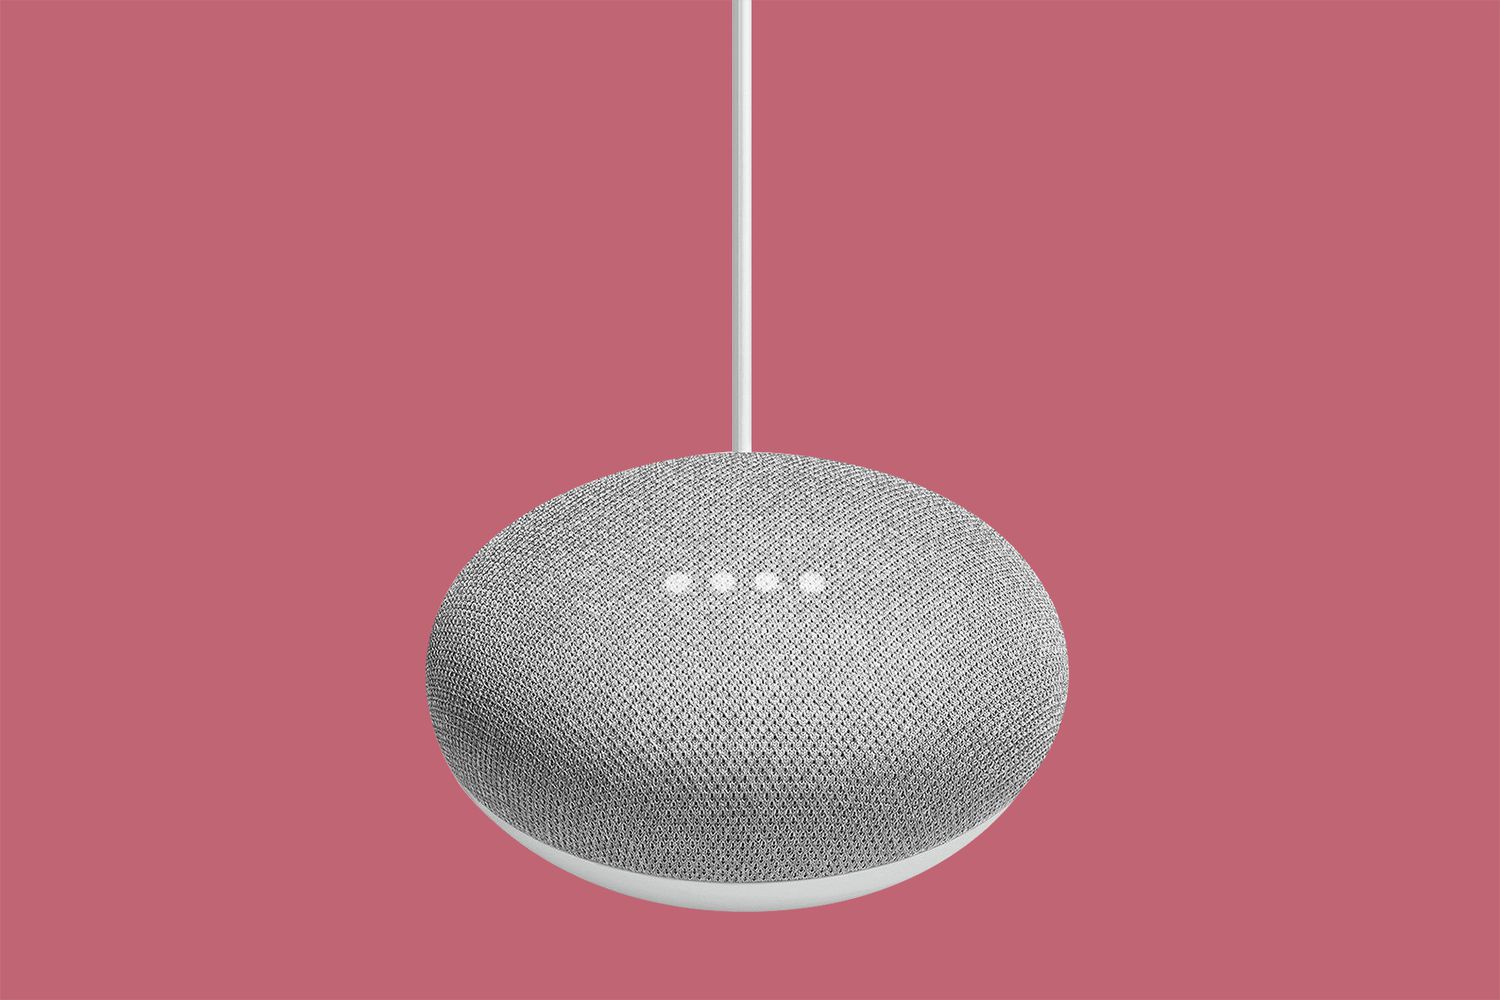 Google "Home Mini" Smart Speaker